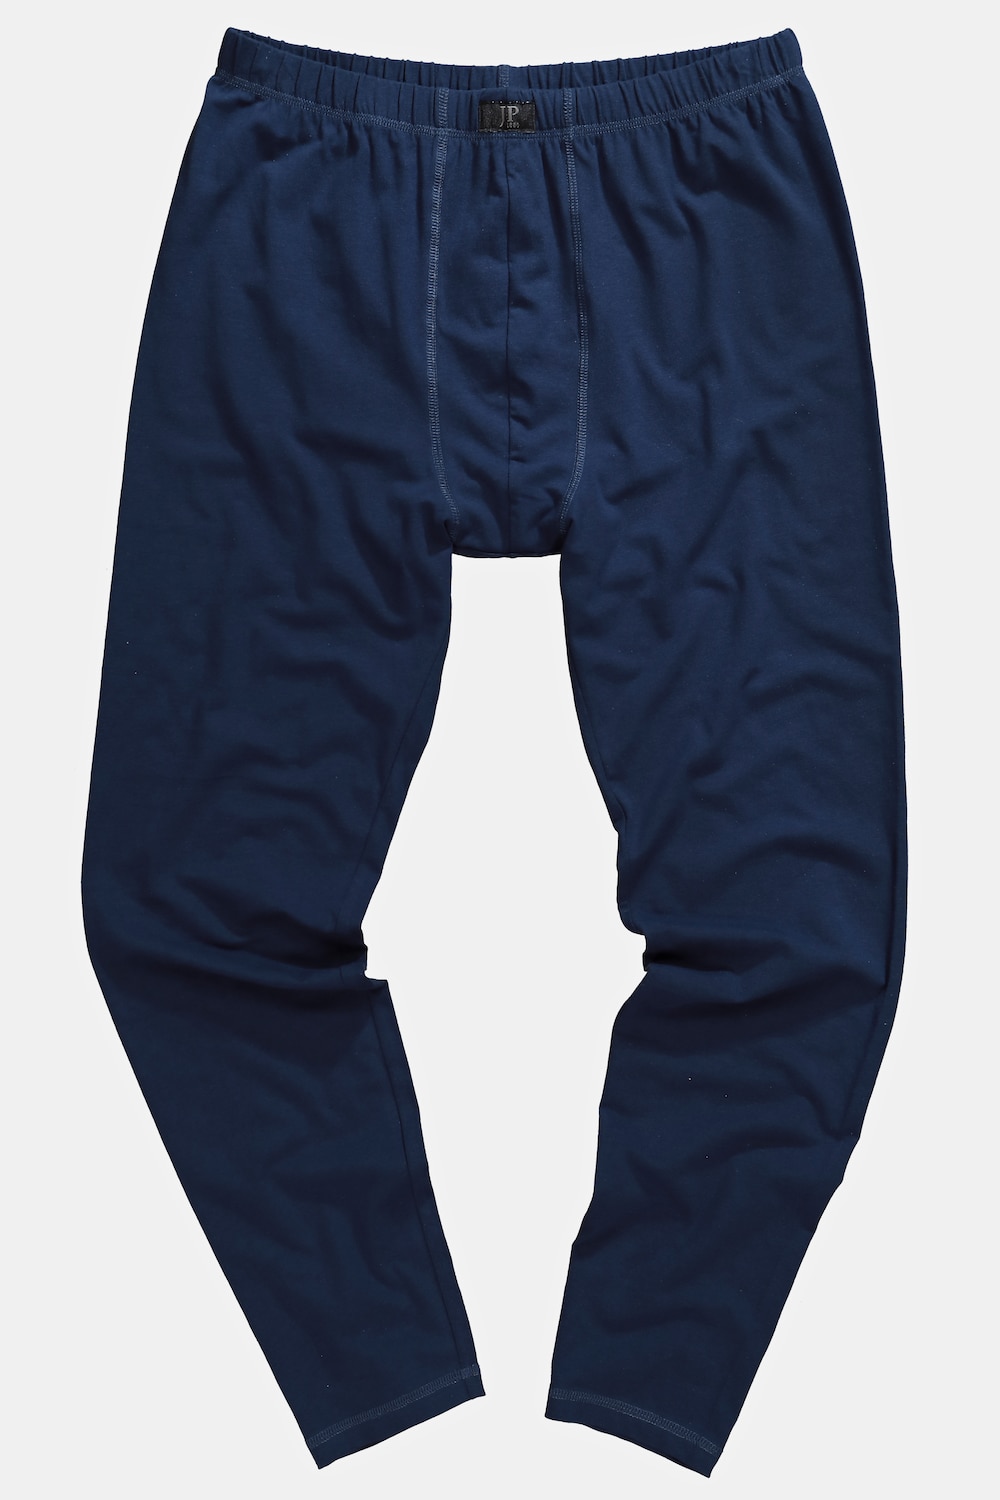 lange onderbroek, grote maten, , heren, blauw, maat: 7xl, katoen, jp1880